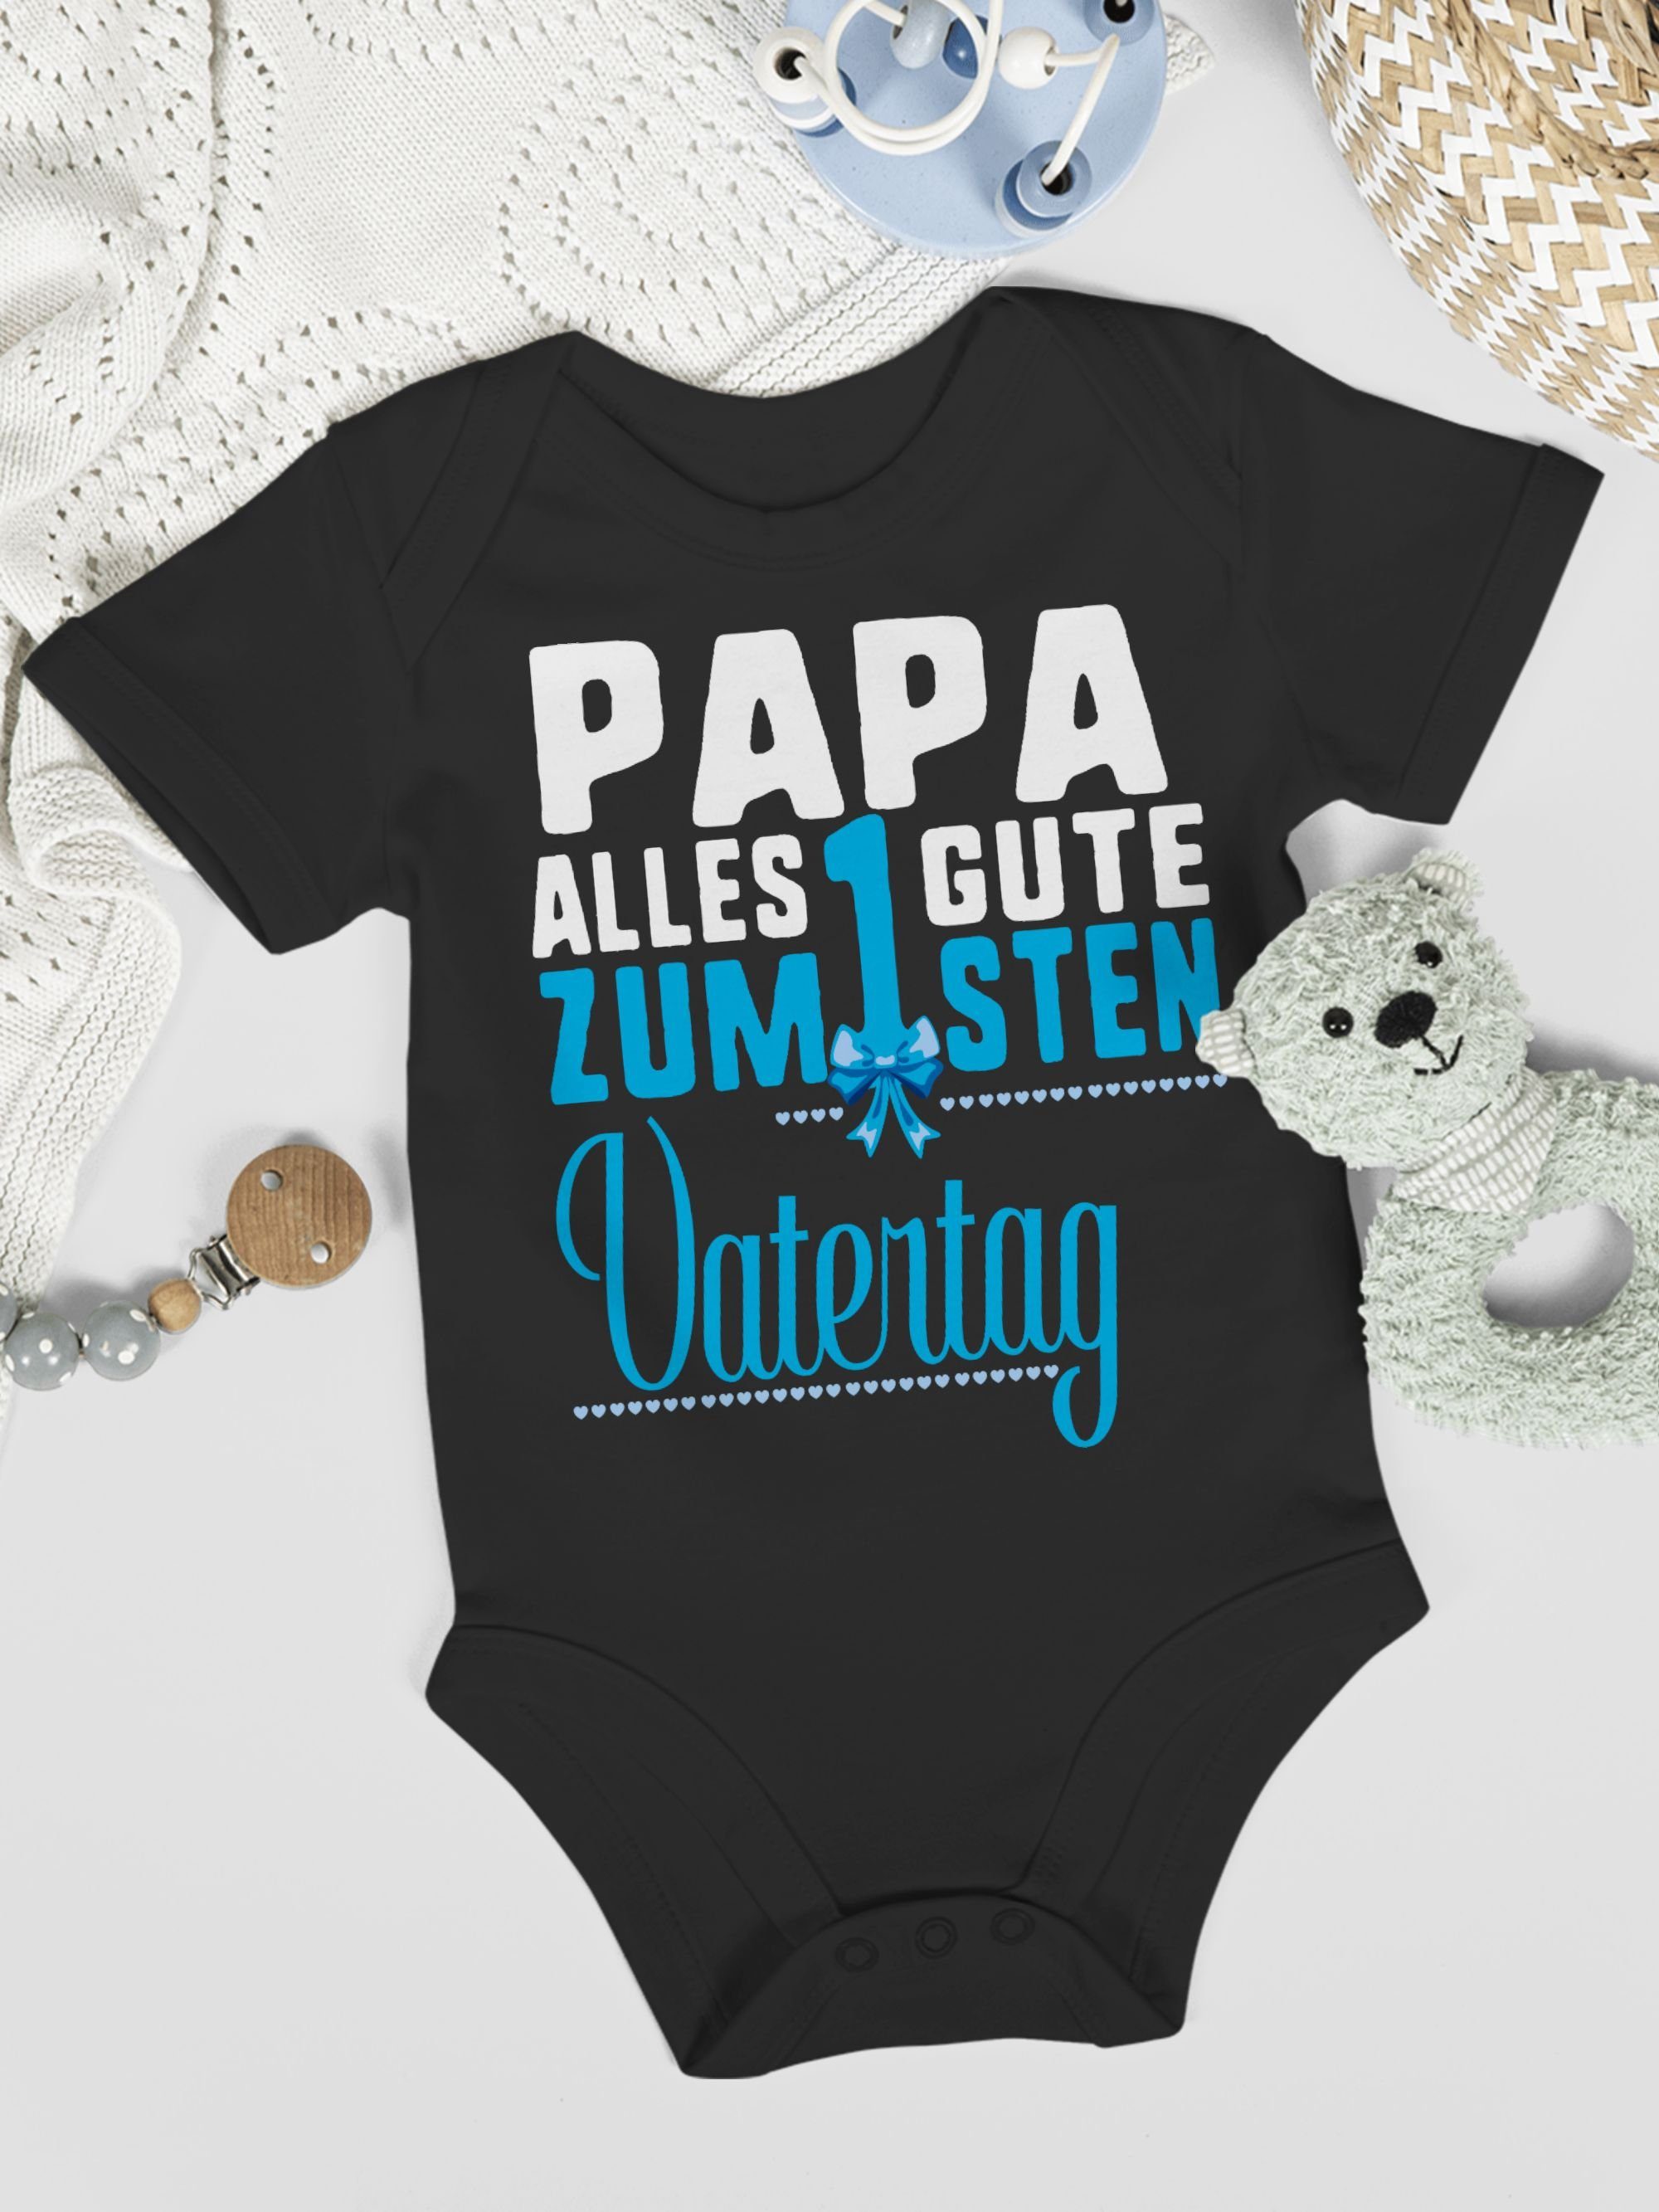 Shirtracer Shirtbody Baby Vatertag alles Geschenk zum Schwarz blau Guten 1sten Vatertag 2 Papa